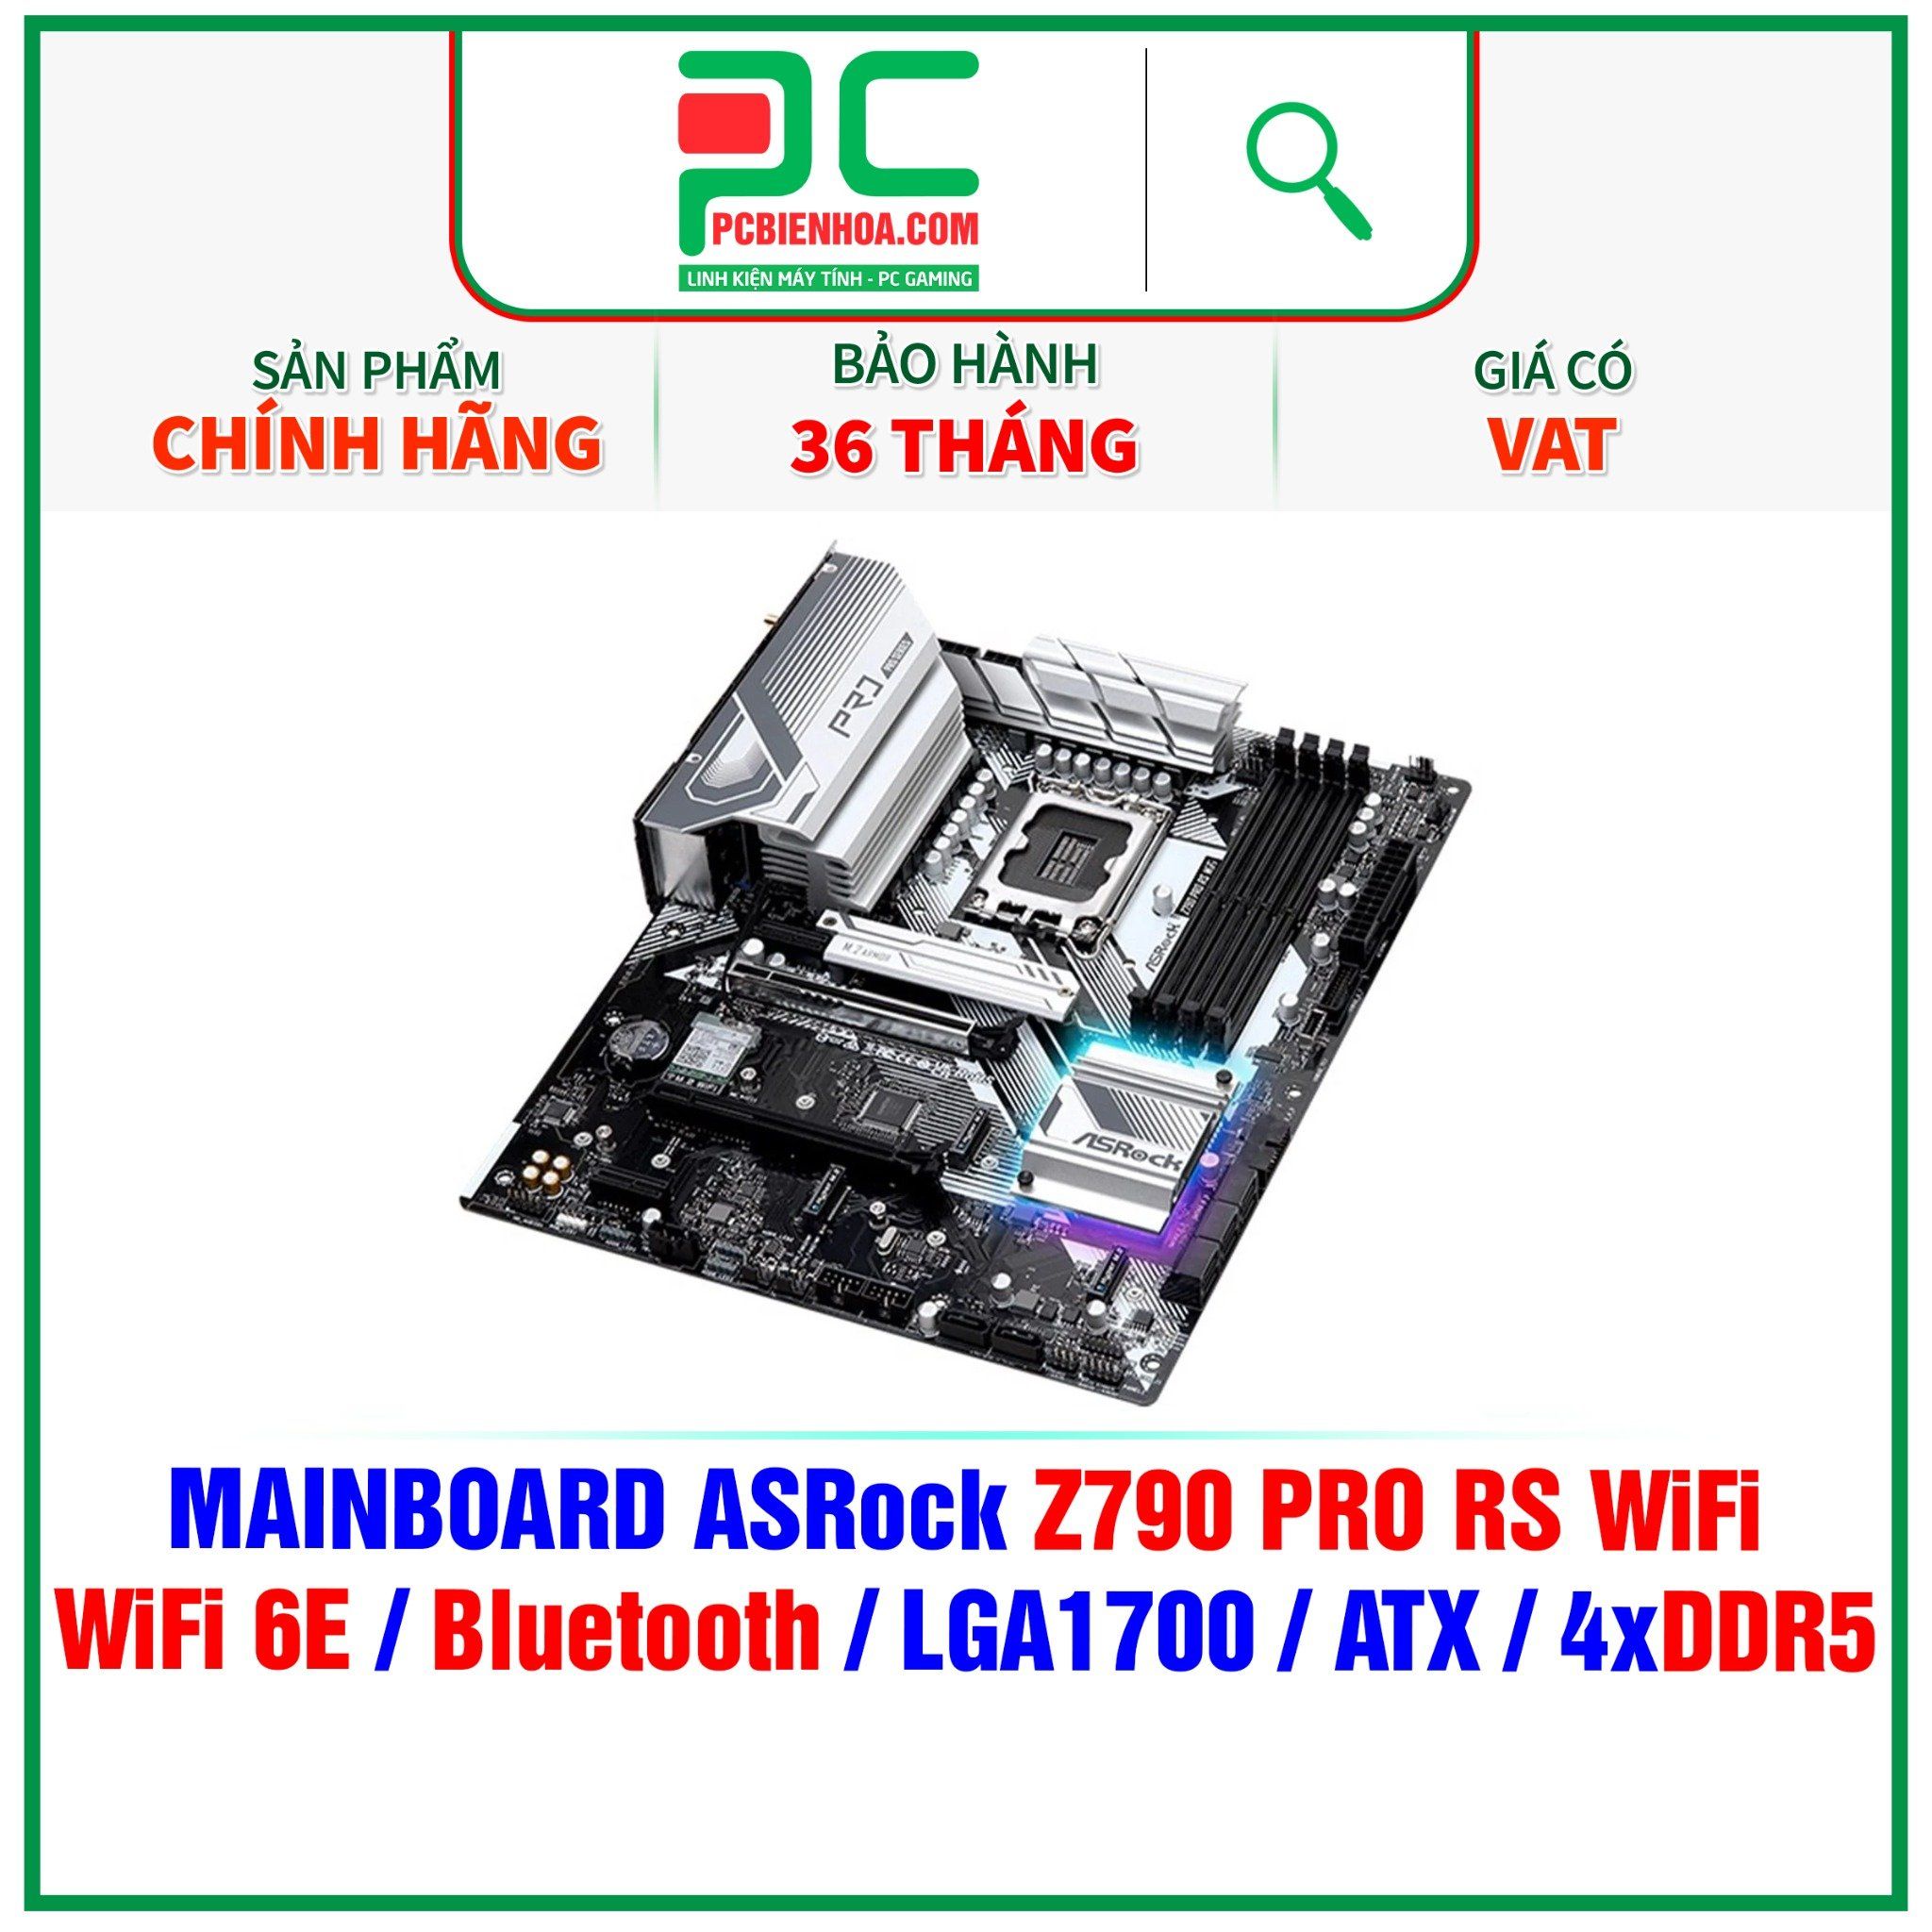  DDR5 - MAINBOARD ASROCK Z790 PRO RS WiFi ( WiFi 6E / Bluetooth / LGA1700 / ATX / 4xDDR5 ) 